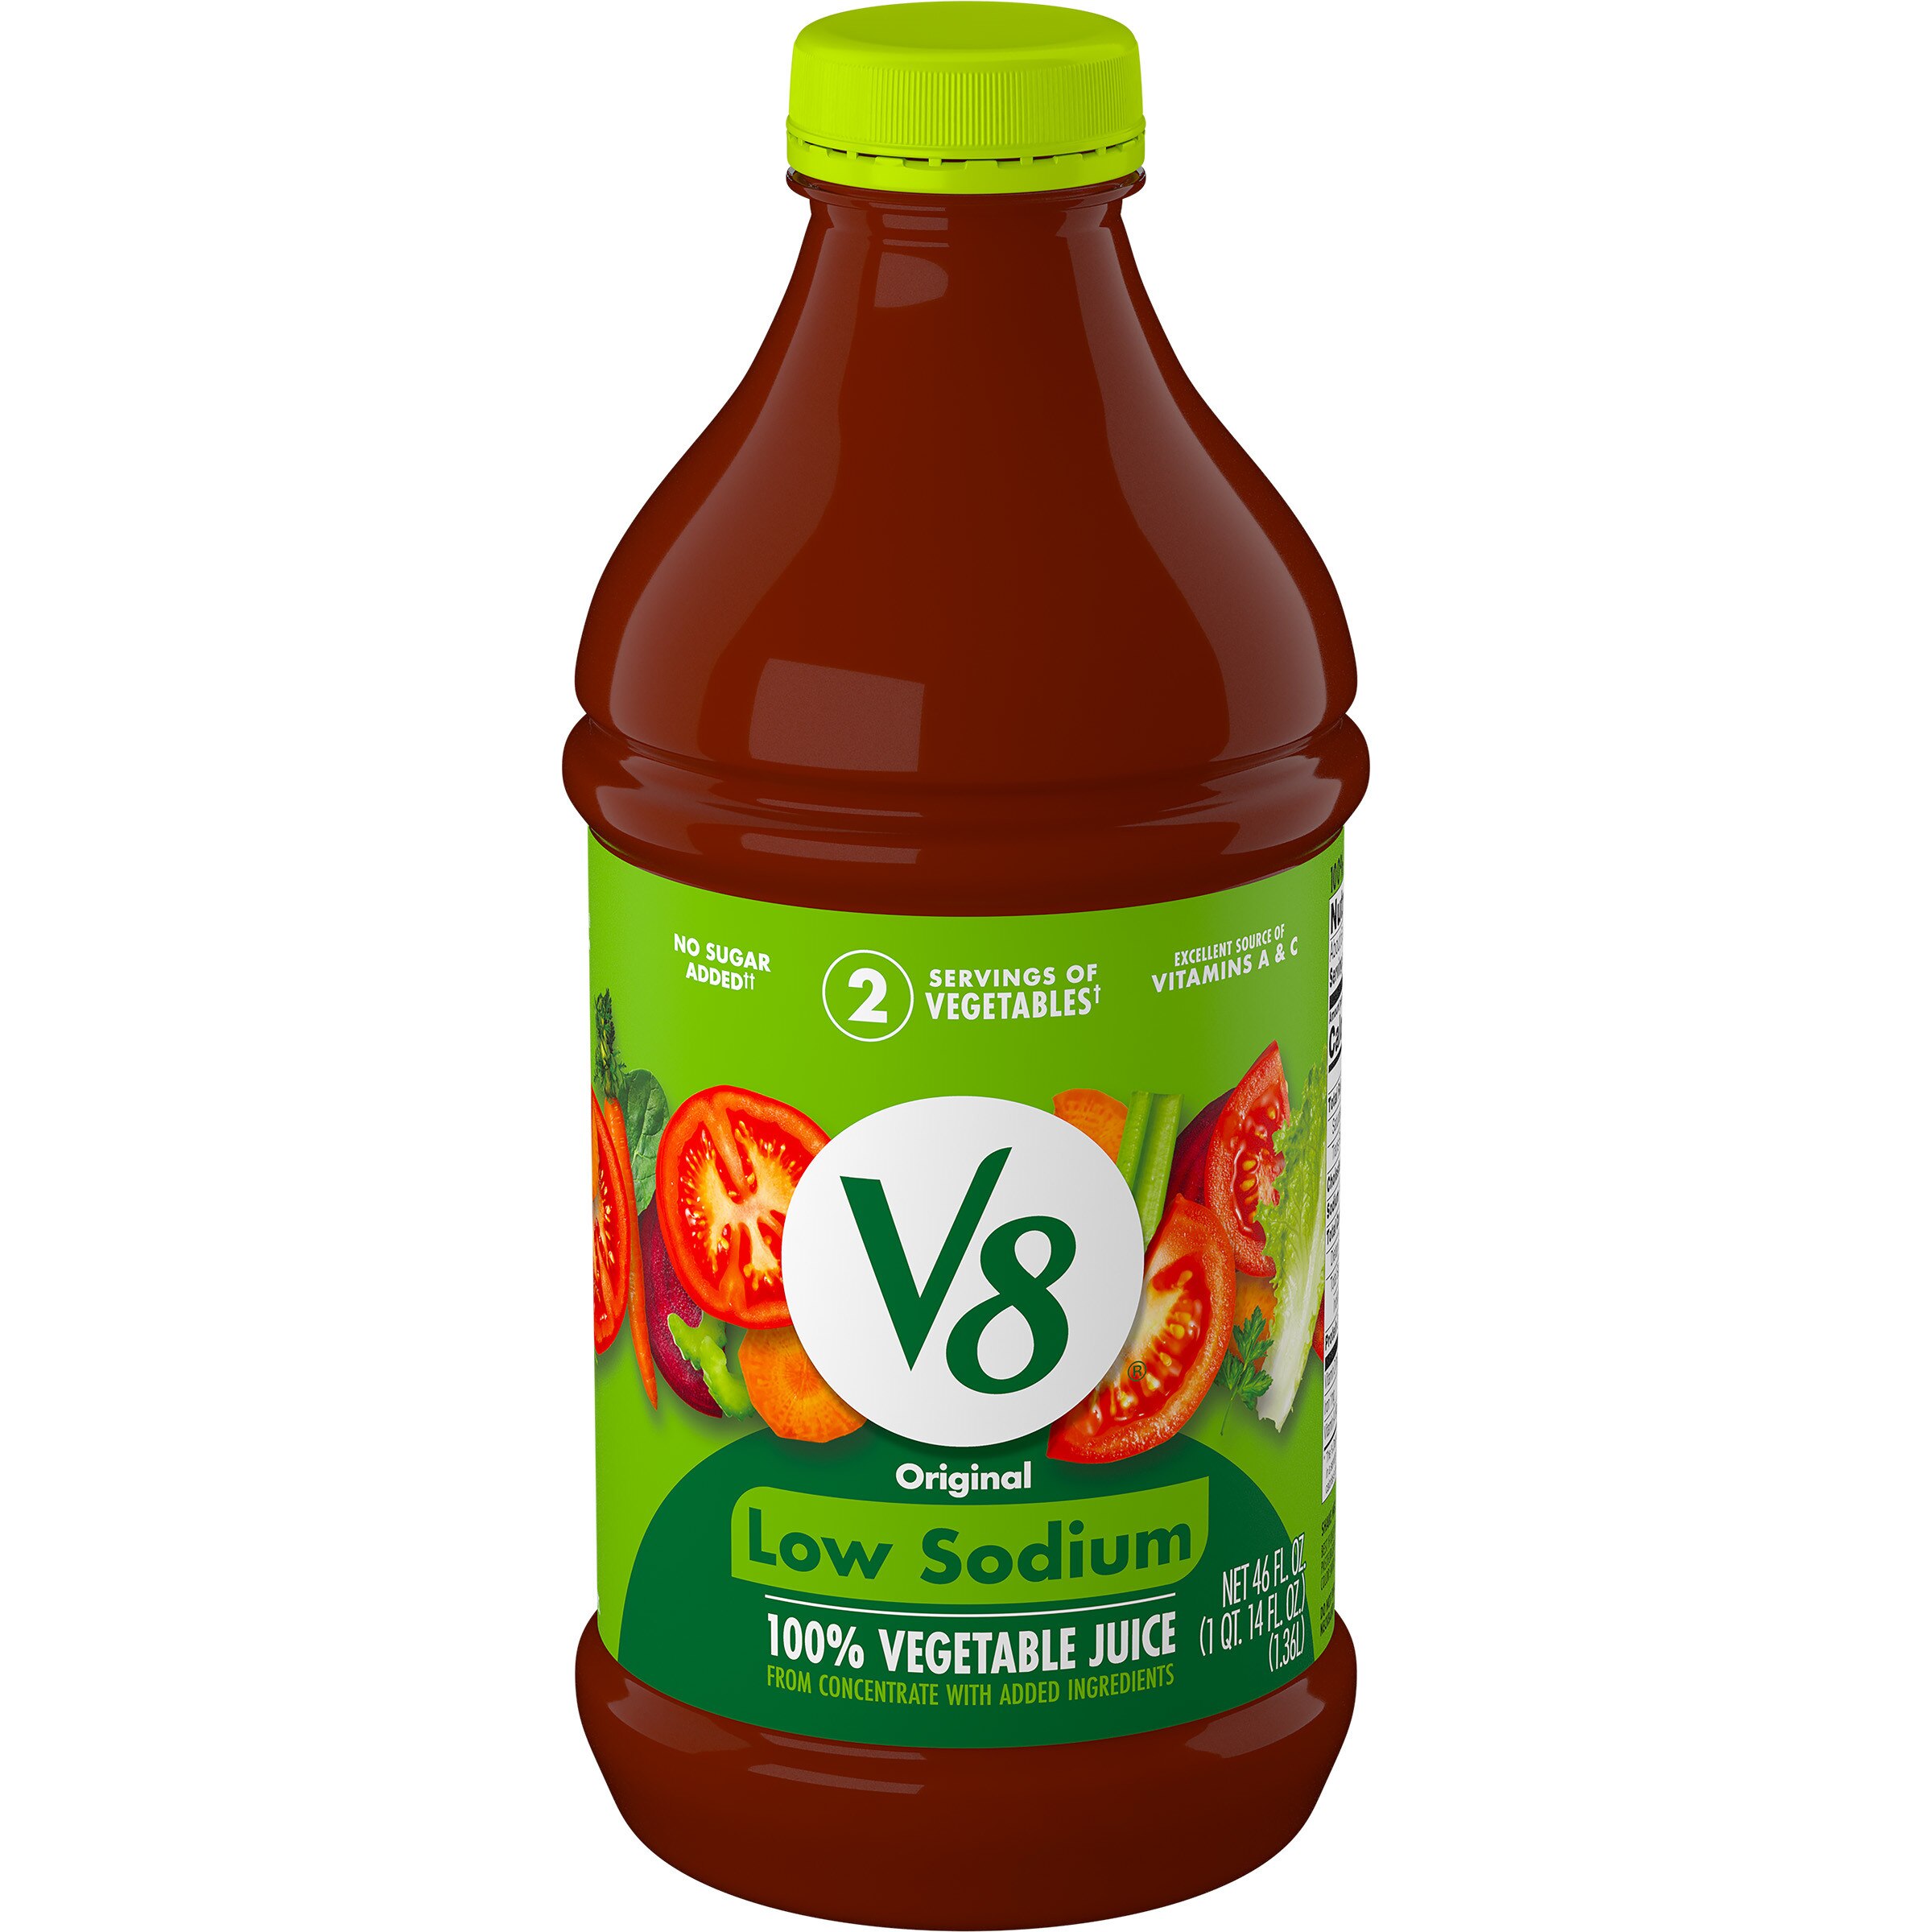 V8 Low Sodium Original 100% Vegetable Juice, 46 FL OZ Bottle